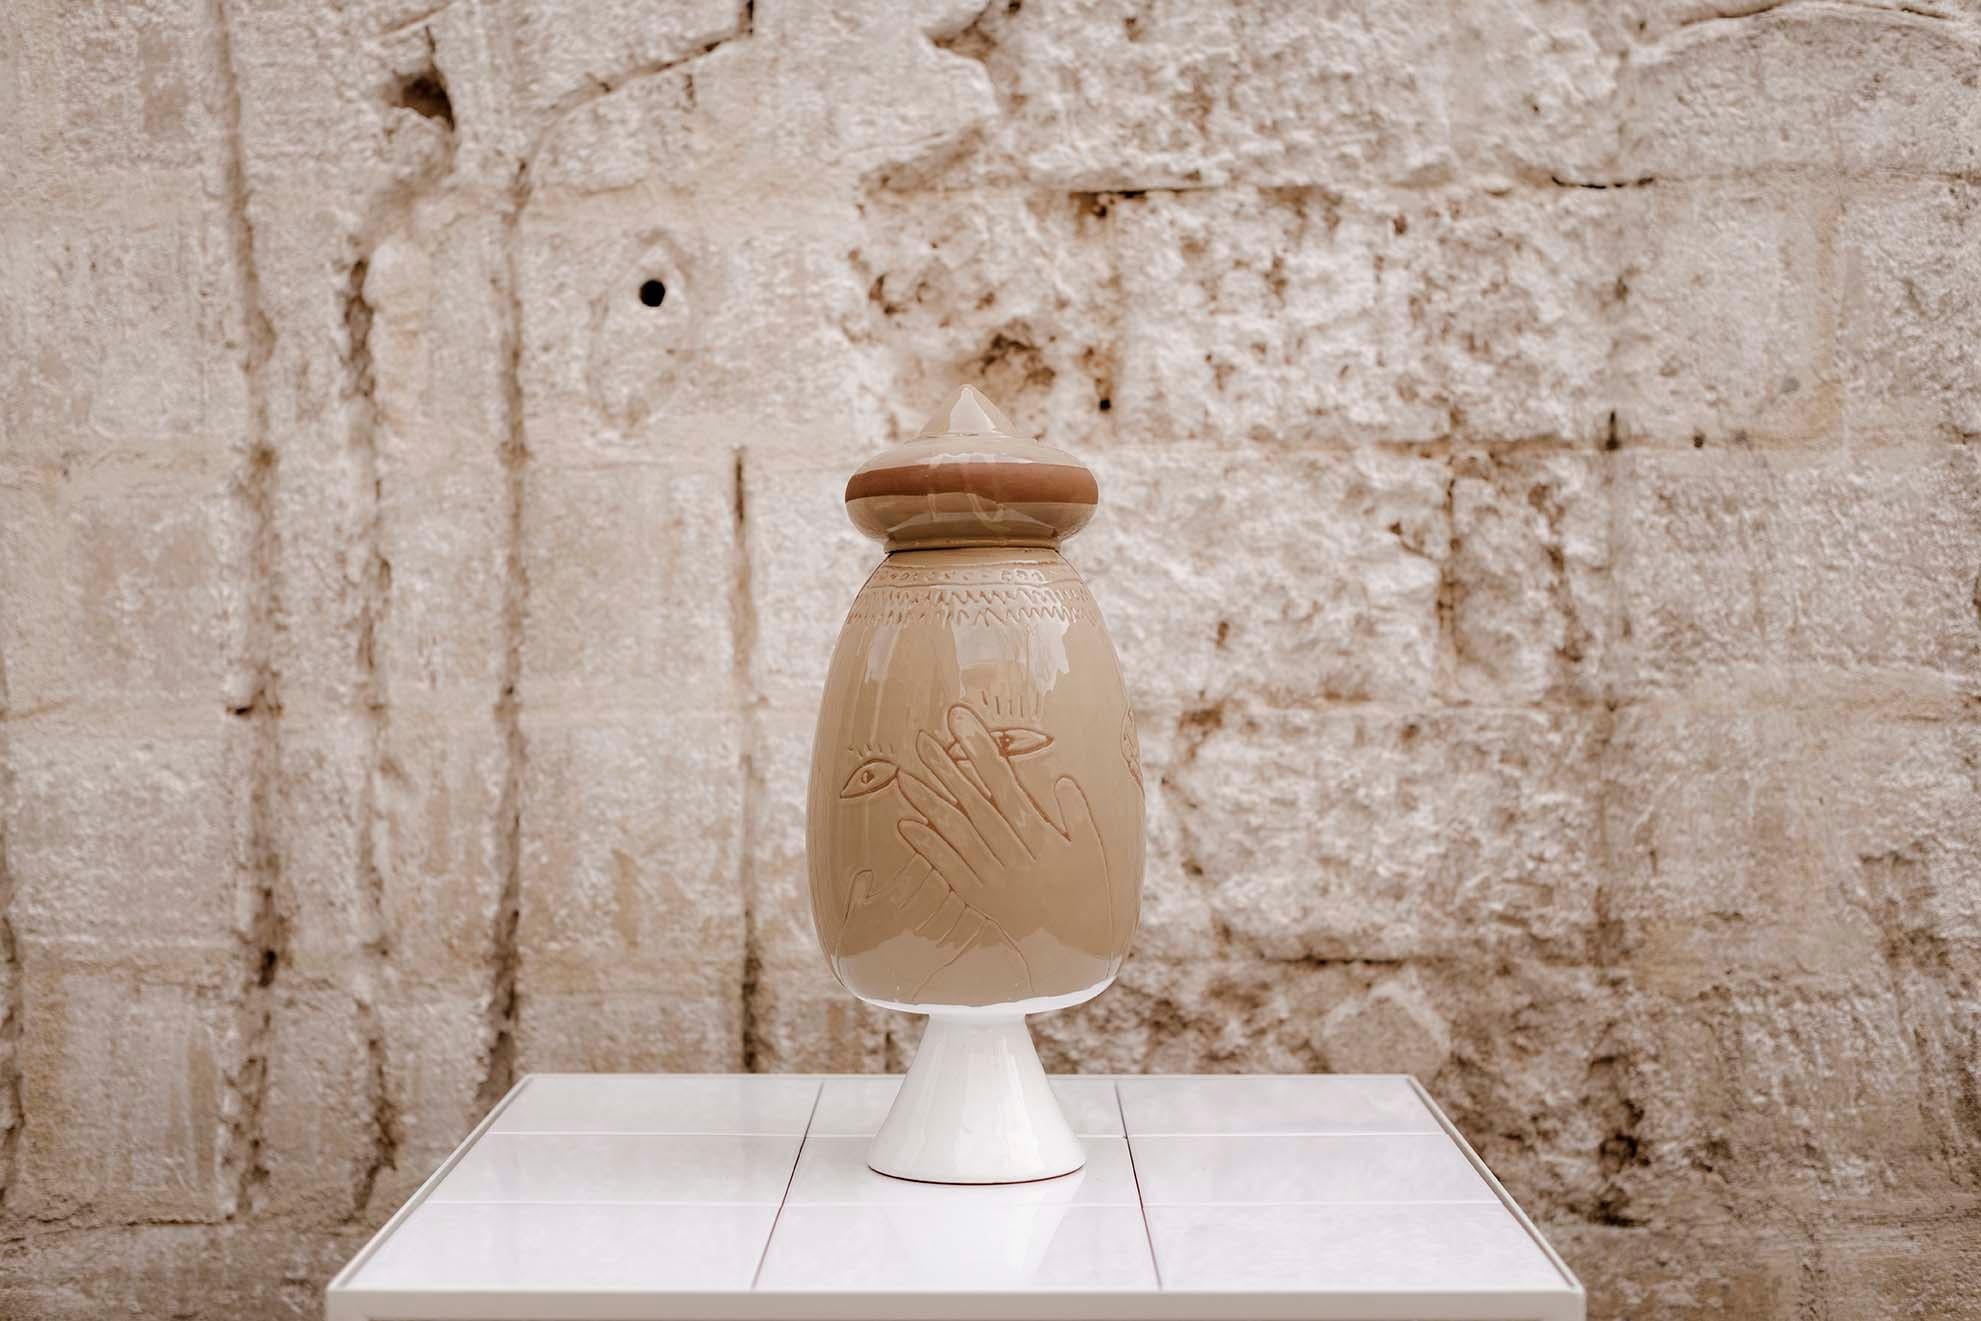 Ce vase de la collection Sighe' s'inspire d'un lieu historique influencé par la proximité d'un monastère qui introduit des signes et des inspirations et surtout un sens aigu de l'iconographie médiévale.

Le 